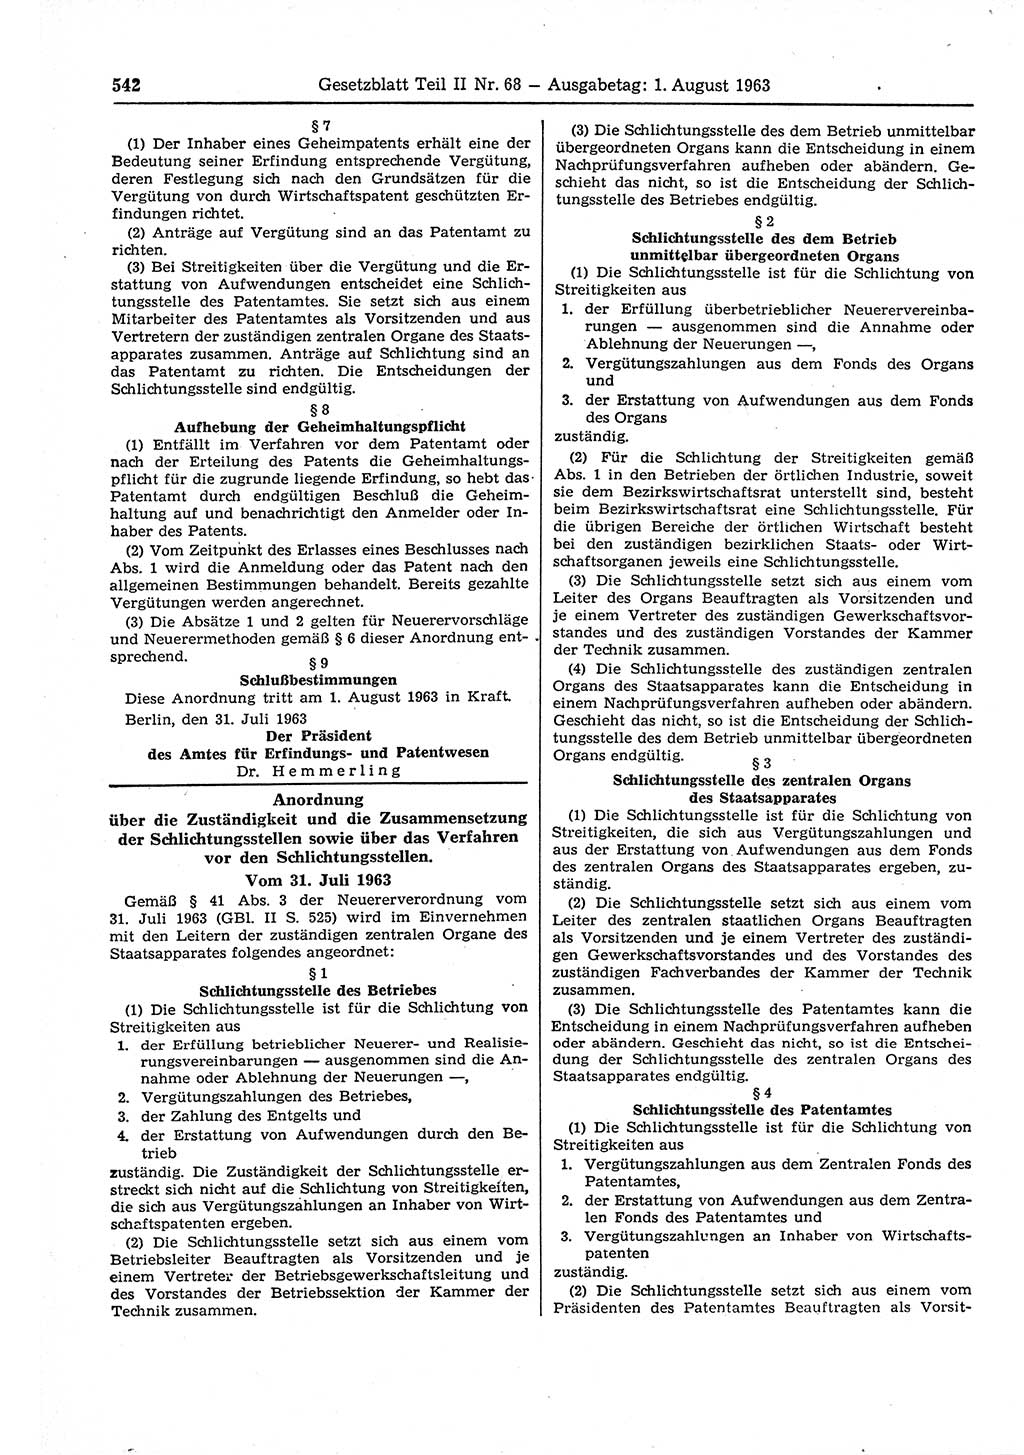 Gesetzblatt (GBl.) der Deutschen Demokratischen Republik (DDR) Teil ⅠⅠ 1963, Seite 542 (GBl. DDR ⅠⅠ 1963, S. 542)